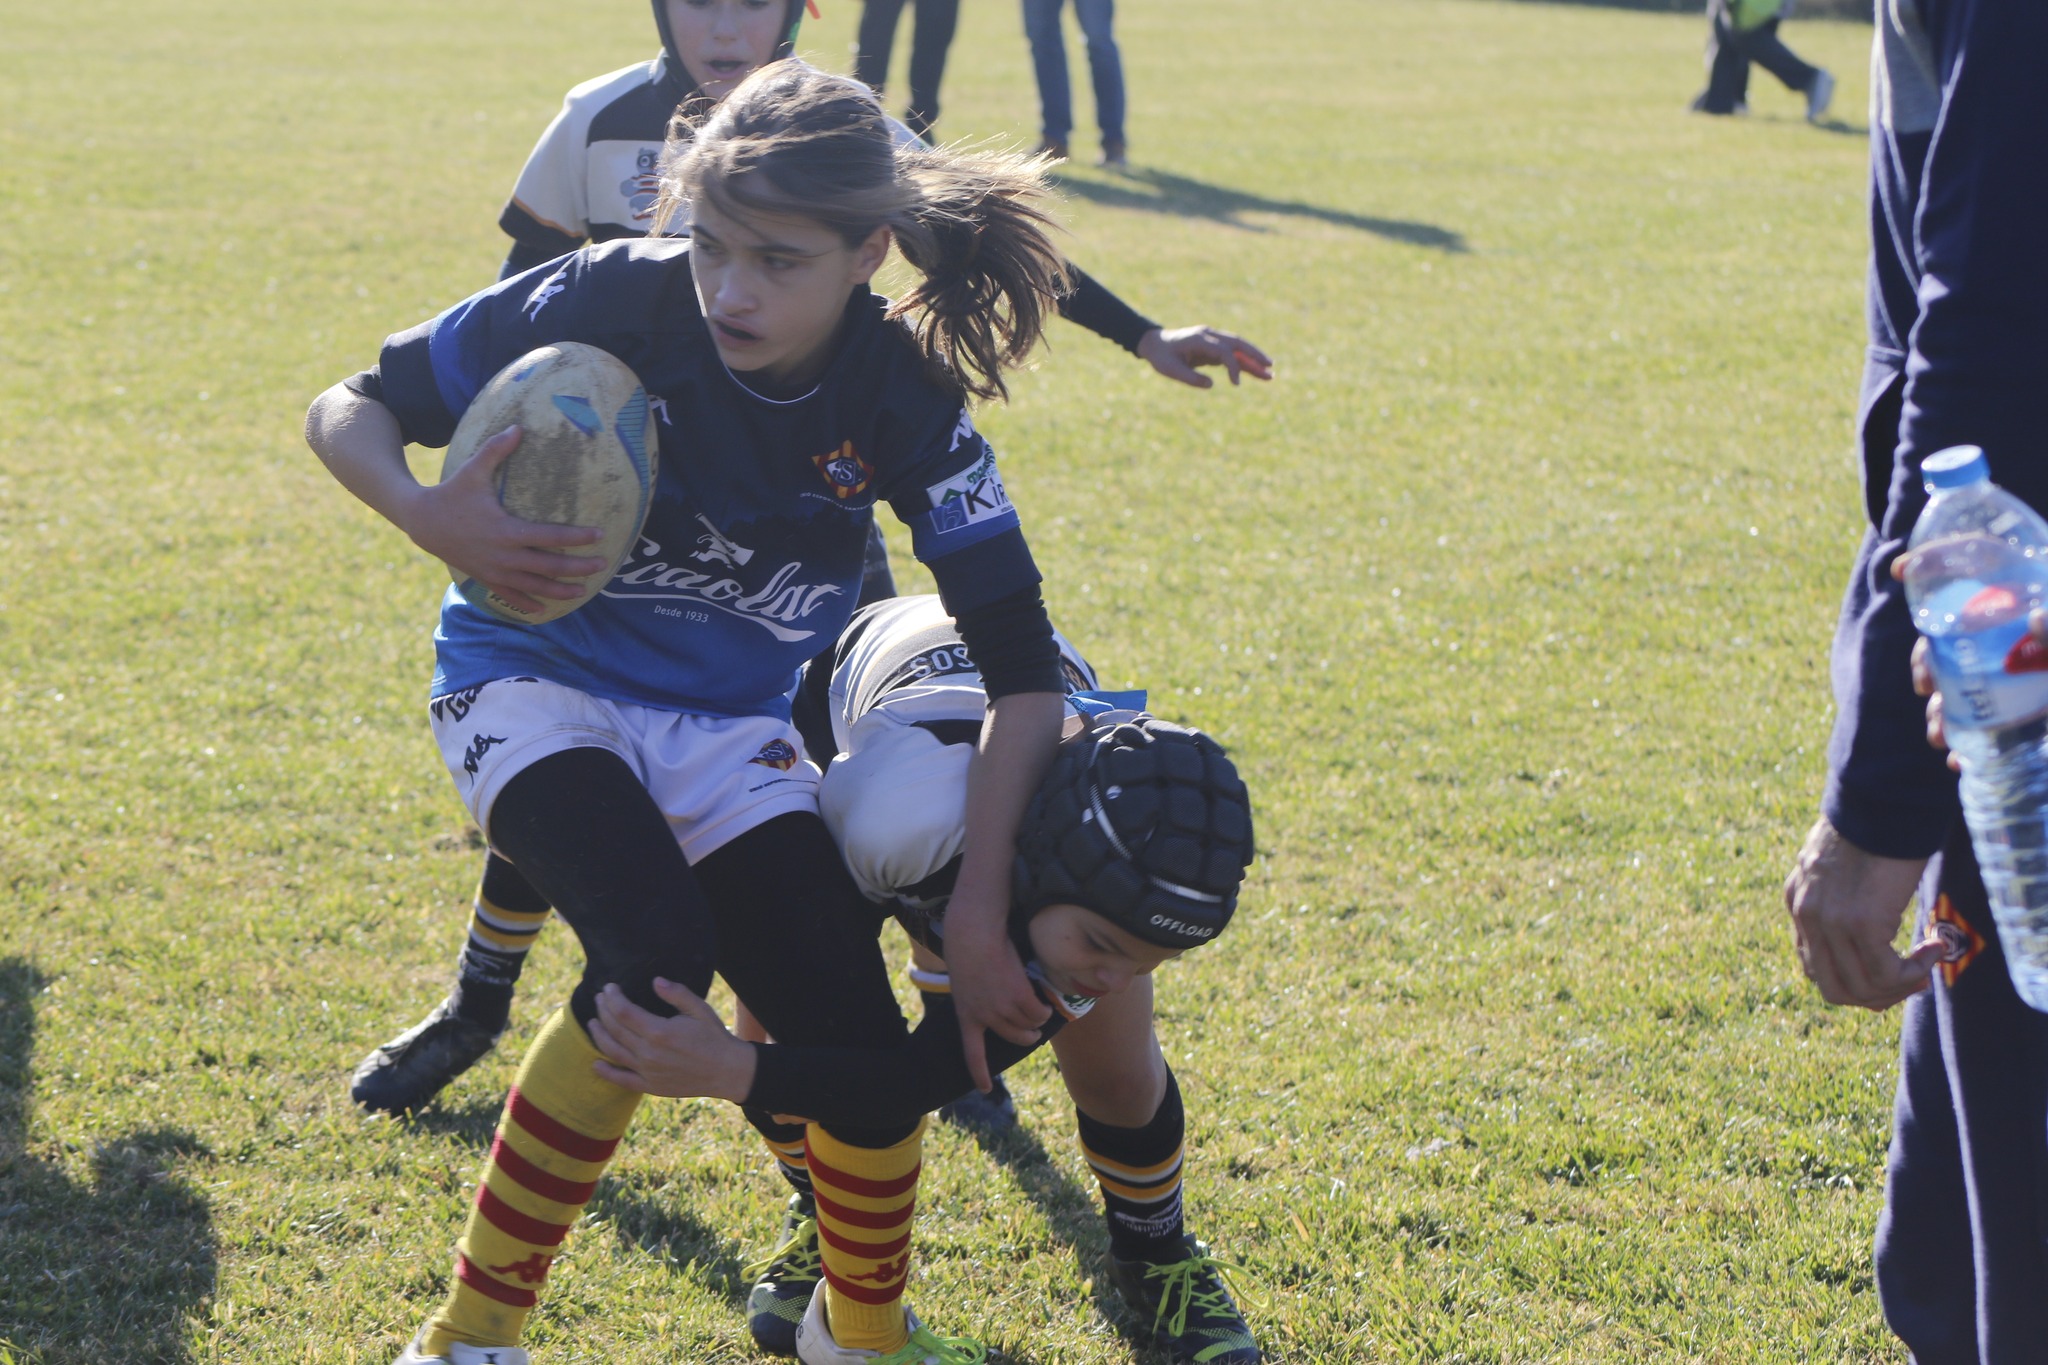 Crónica de la 1ª jornada de escuelas de rugby 23/24 en Monzón